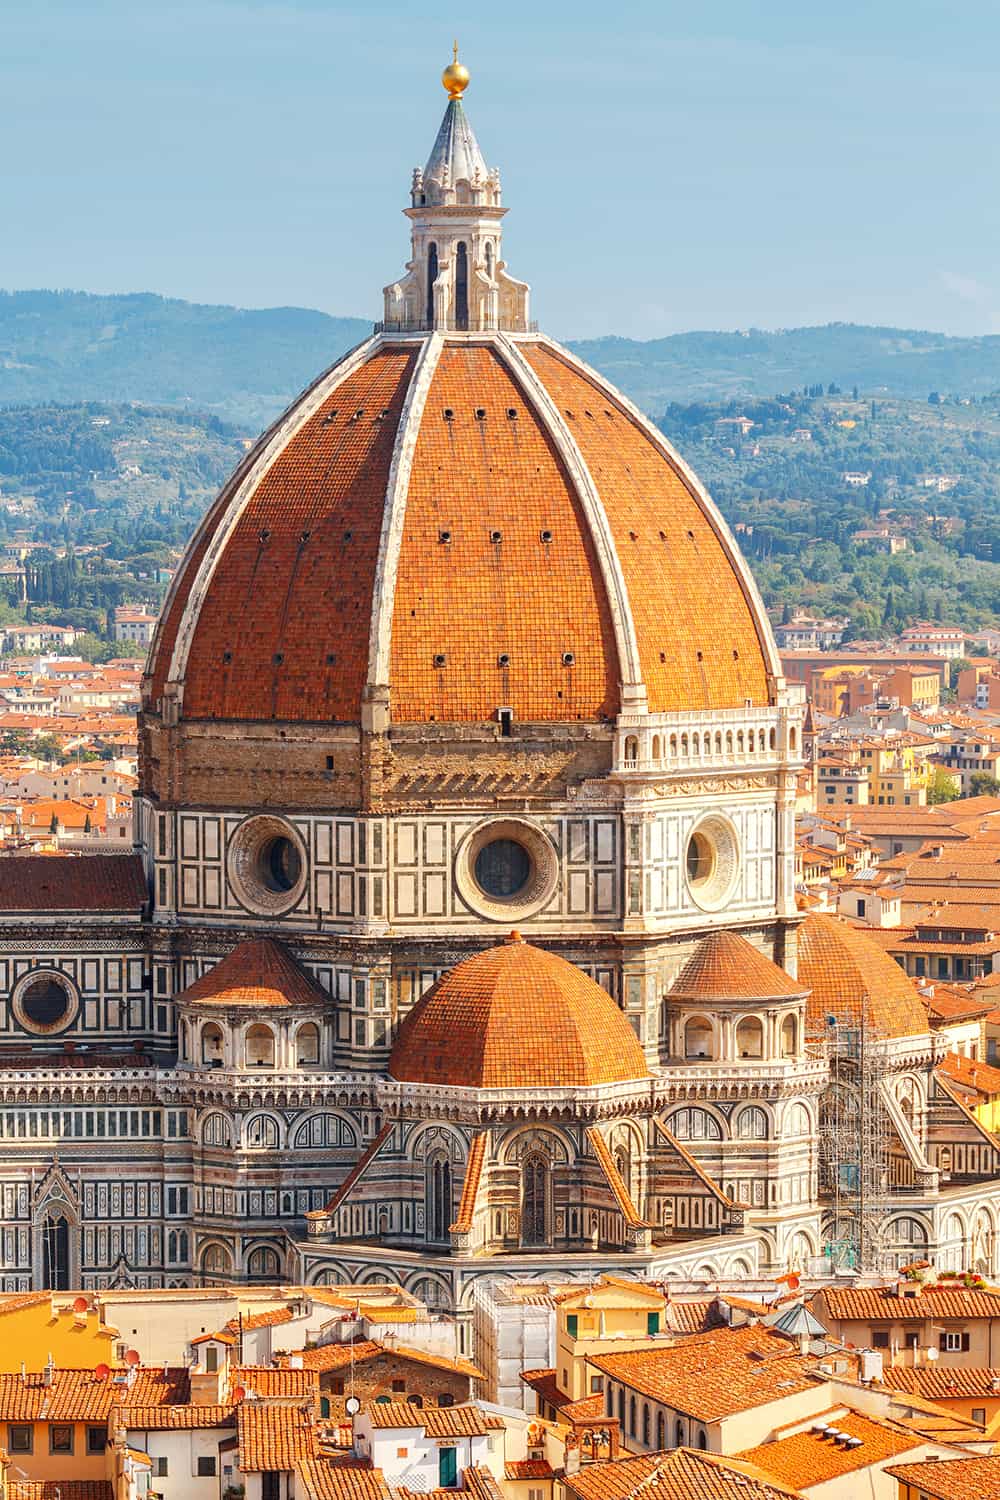 O vedere a Catedralei din Florenta |  Trebuie sa cititi aceste sfaturi de calatorie inainte de a vizita Italia!